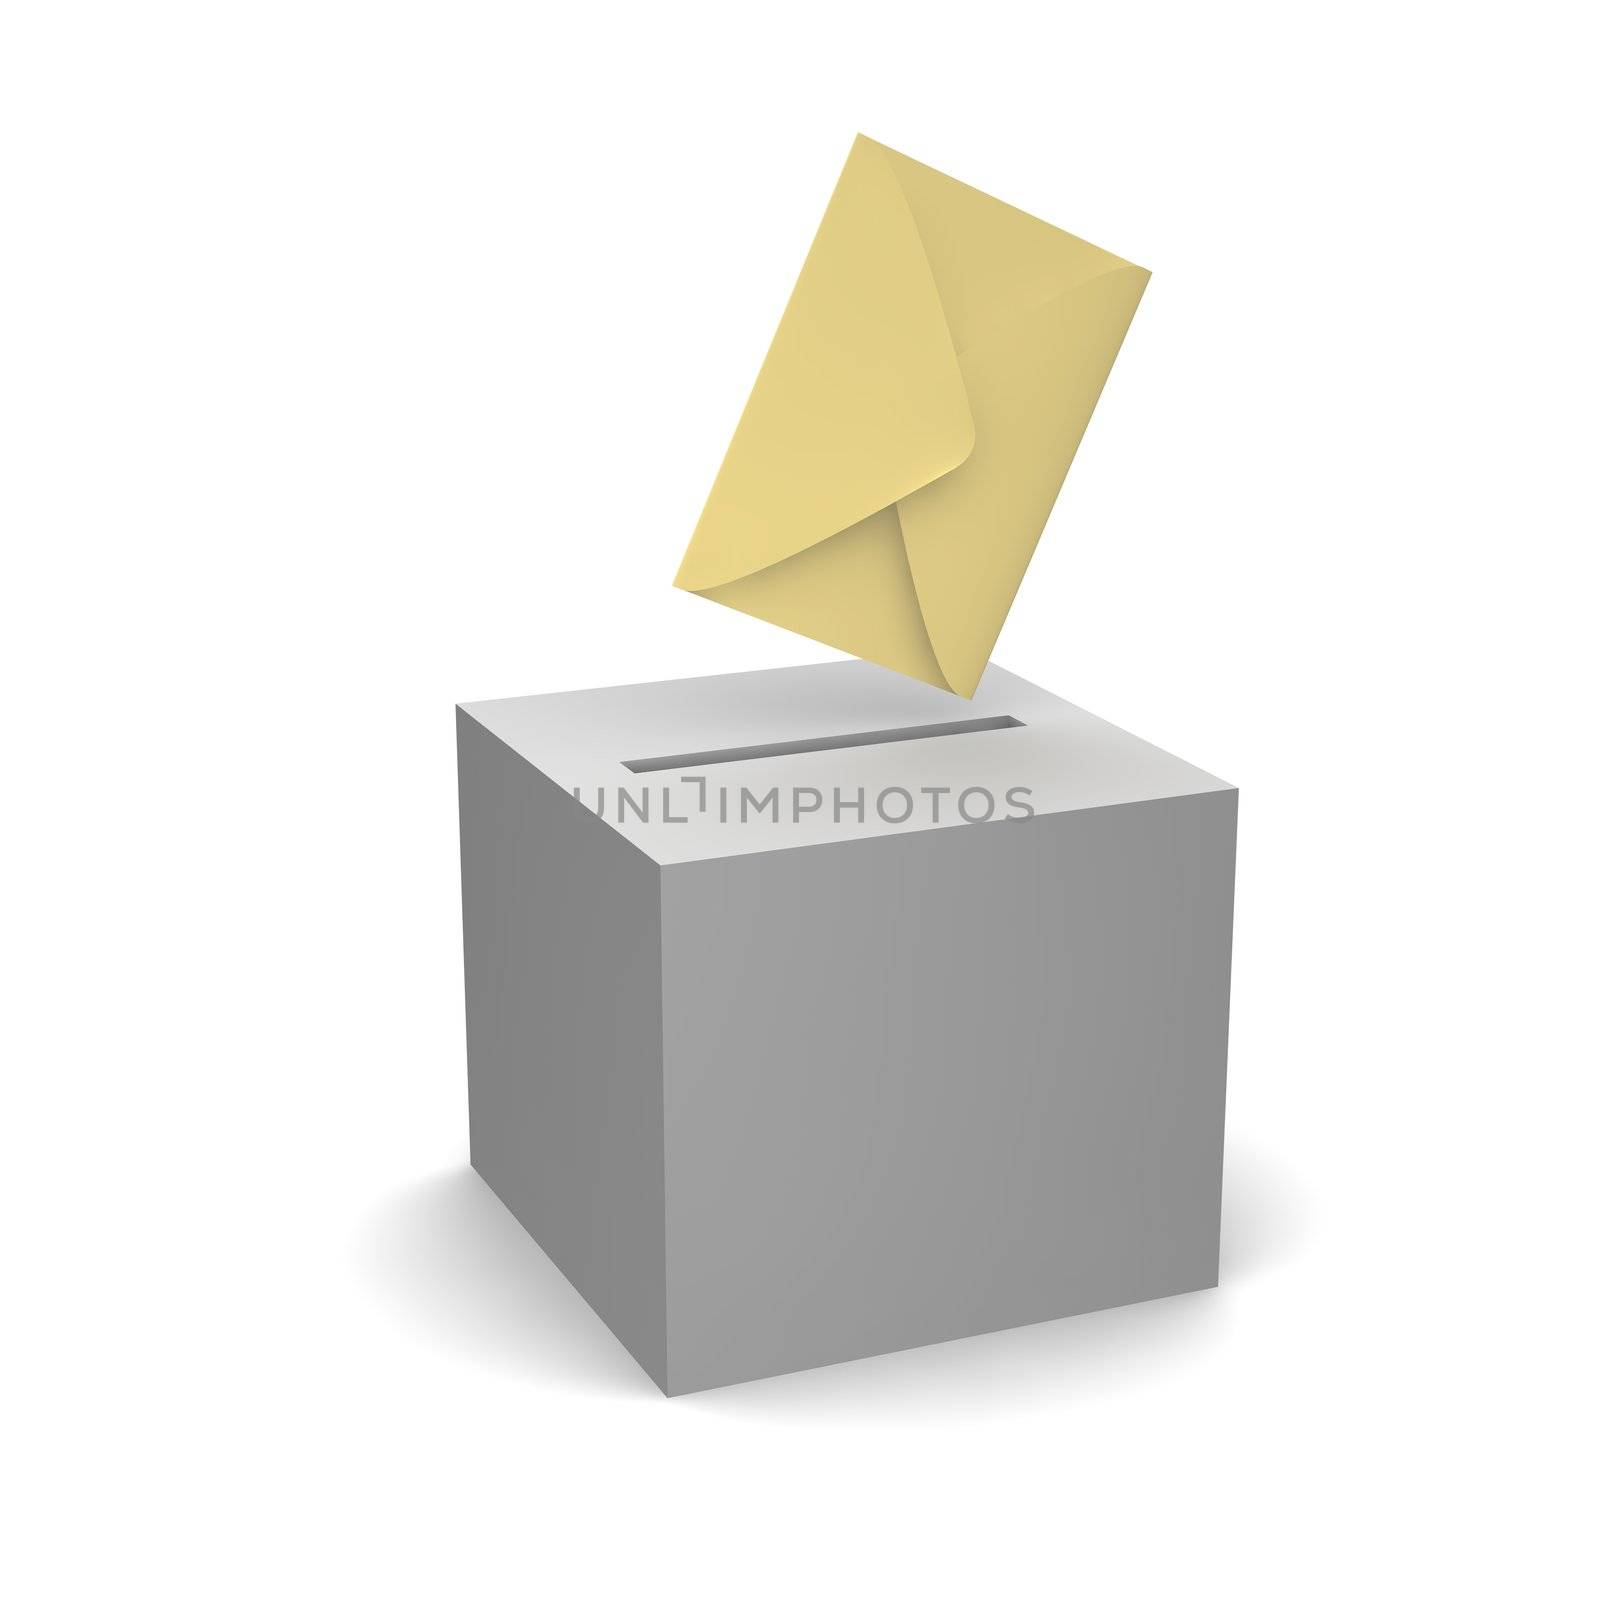 Vote or sending letter. 3d rendered illustration.